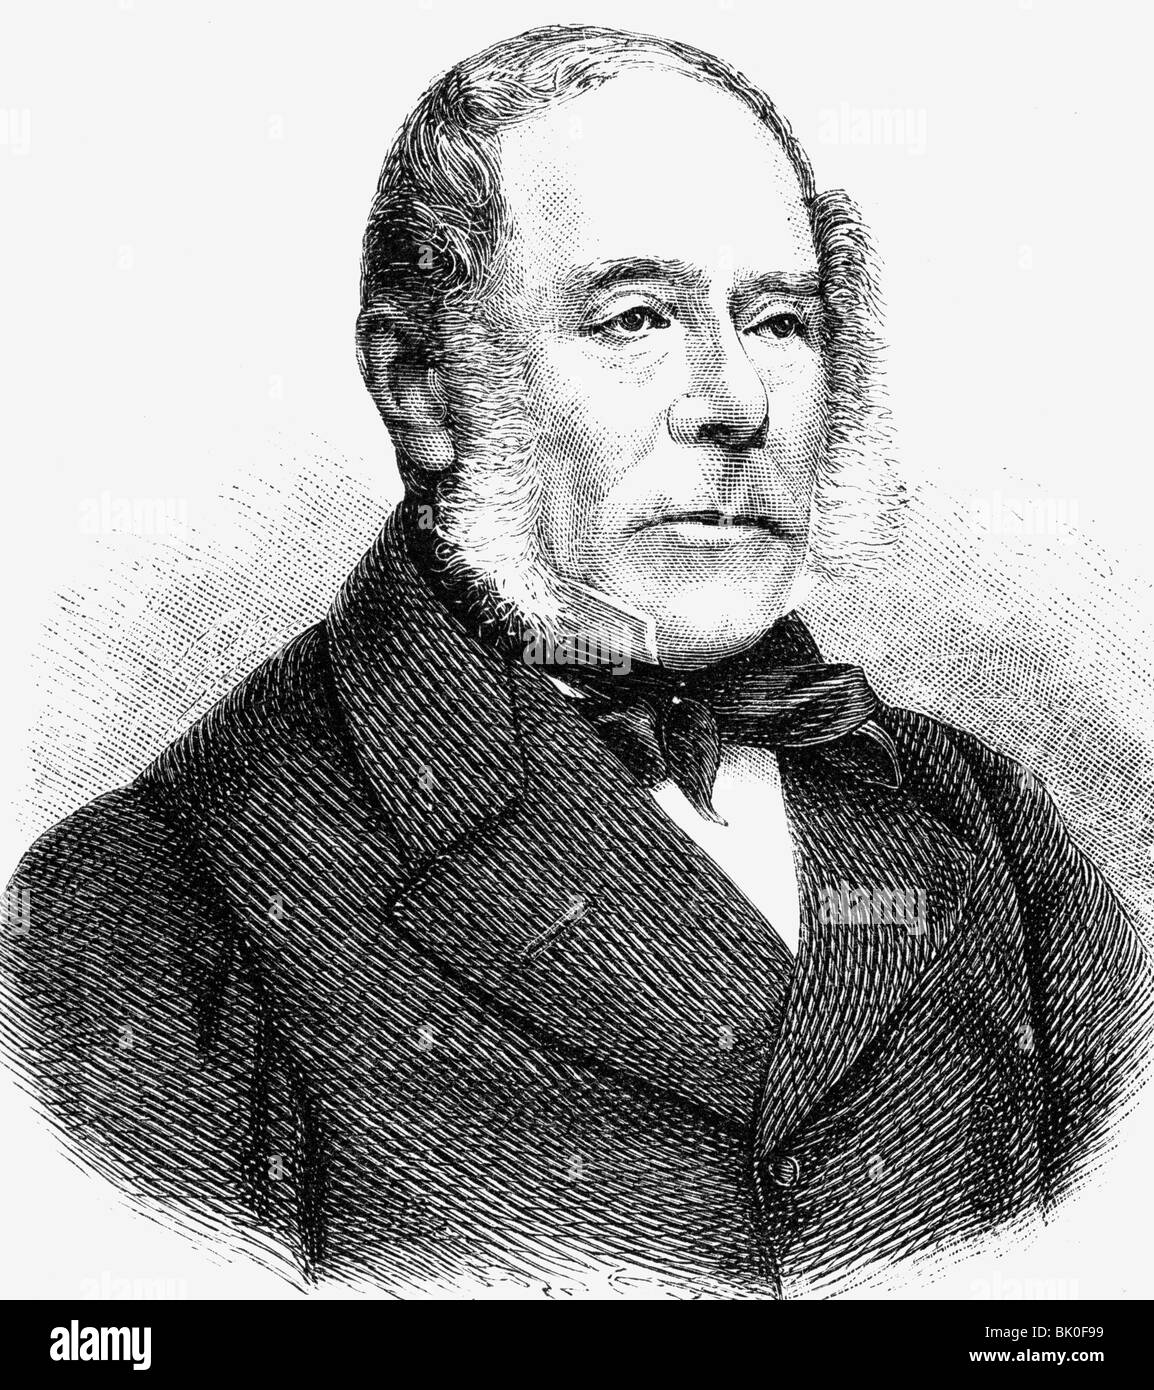 Villiers, George William, 4th Earl of Claredon, 12.1.1800 - 27.6.1870, britischer Politiker (Whigs), Porträt, Holzgravur, 19. Jahrhundert, Stockfoto